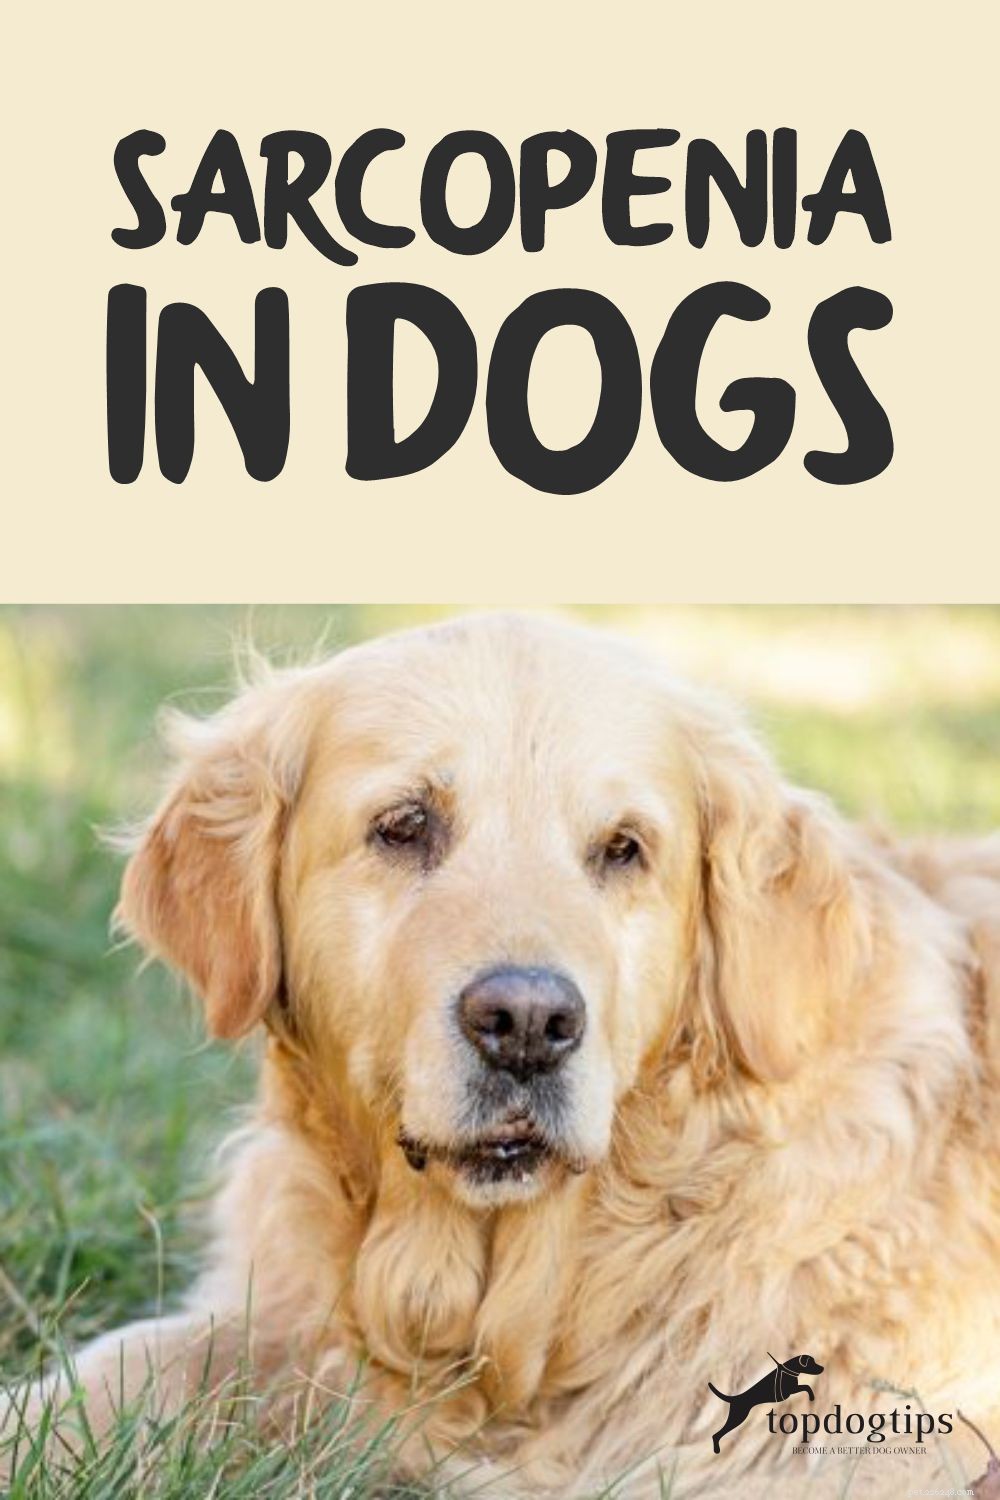 НАЧАЛО №130:Саркопения у собак – что это такое и как ее лечить?